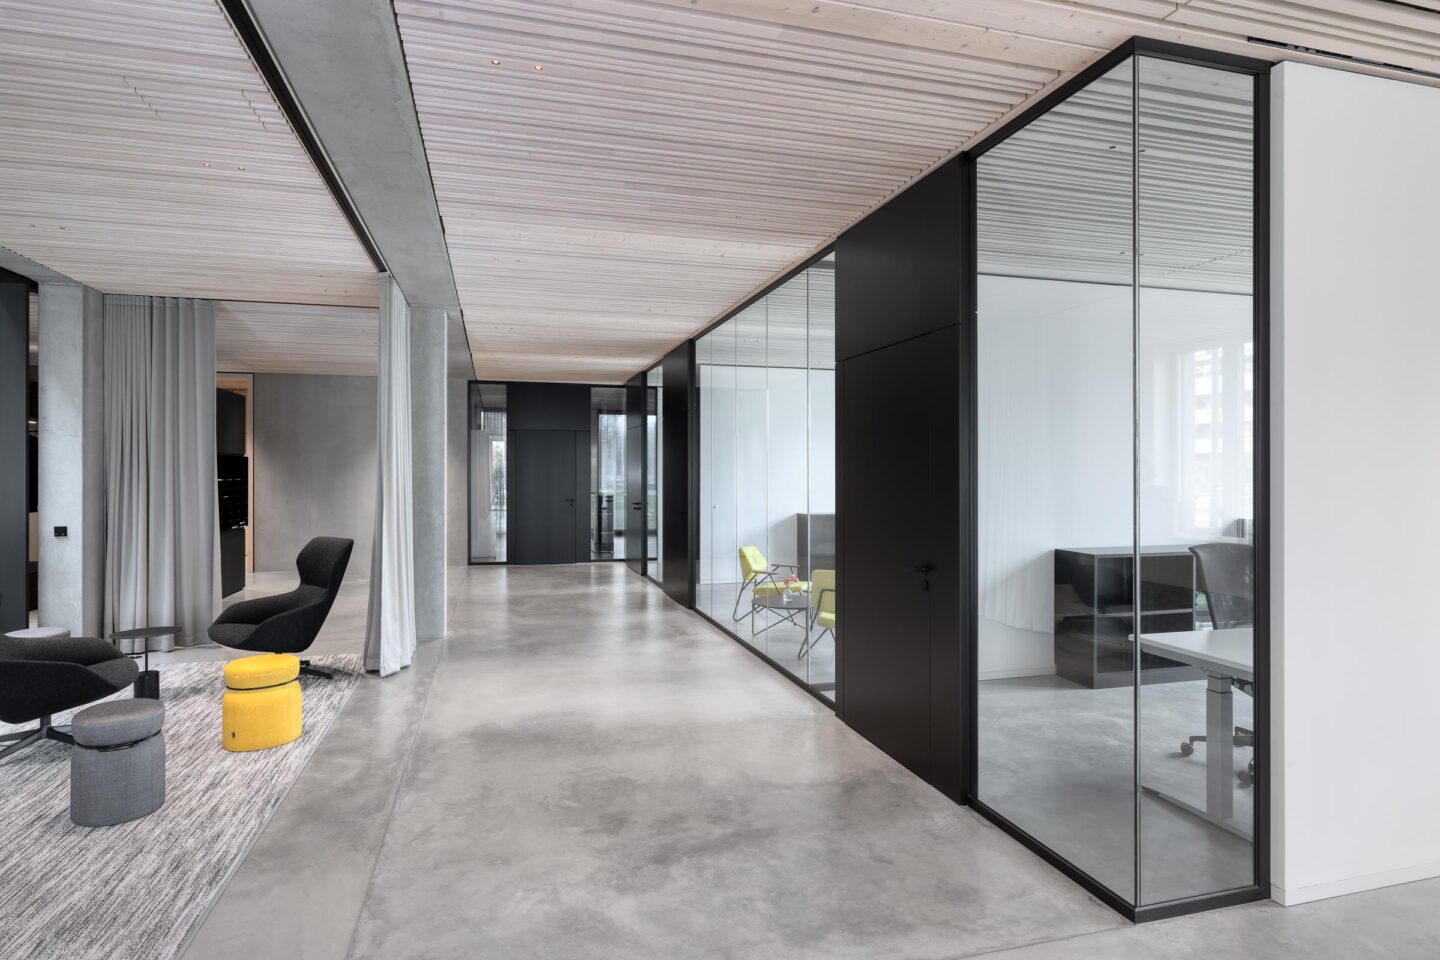 Architekturbüro Nething | Flur, zoniert durch Vorhang und Glaswände